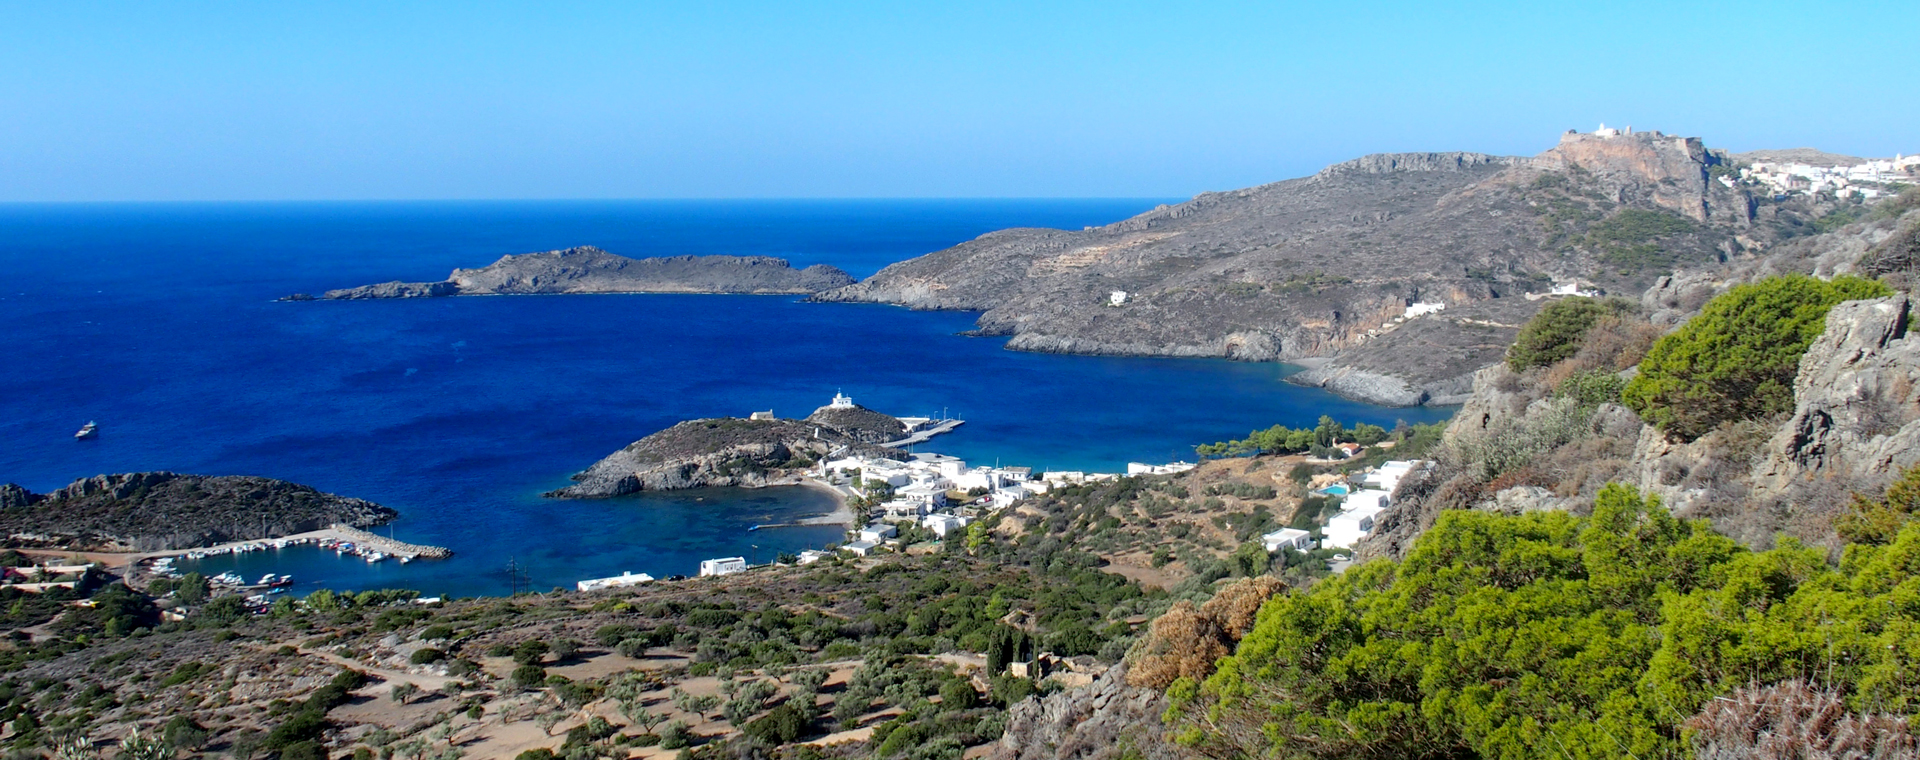 Panorama sur l'île de Cythère